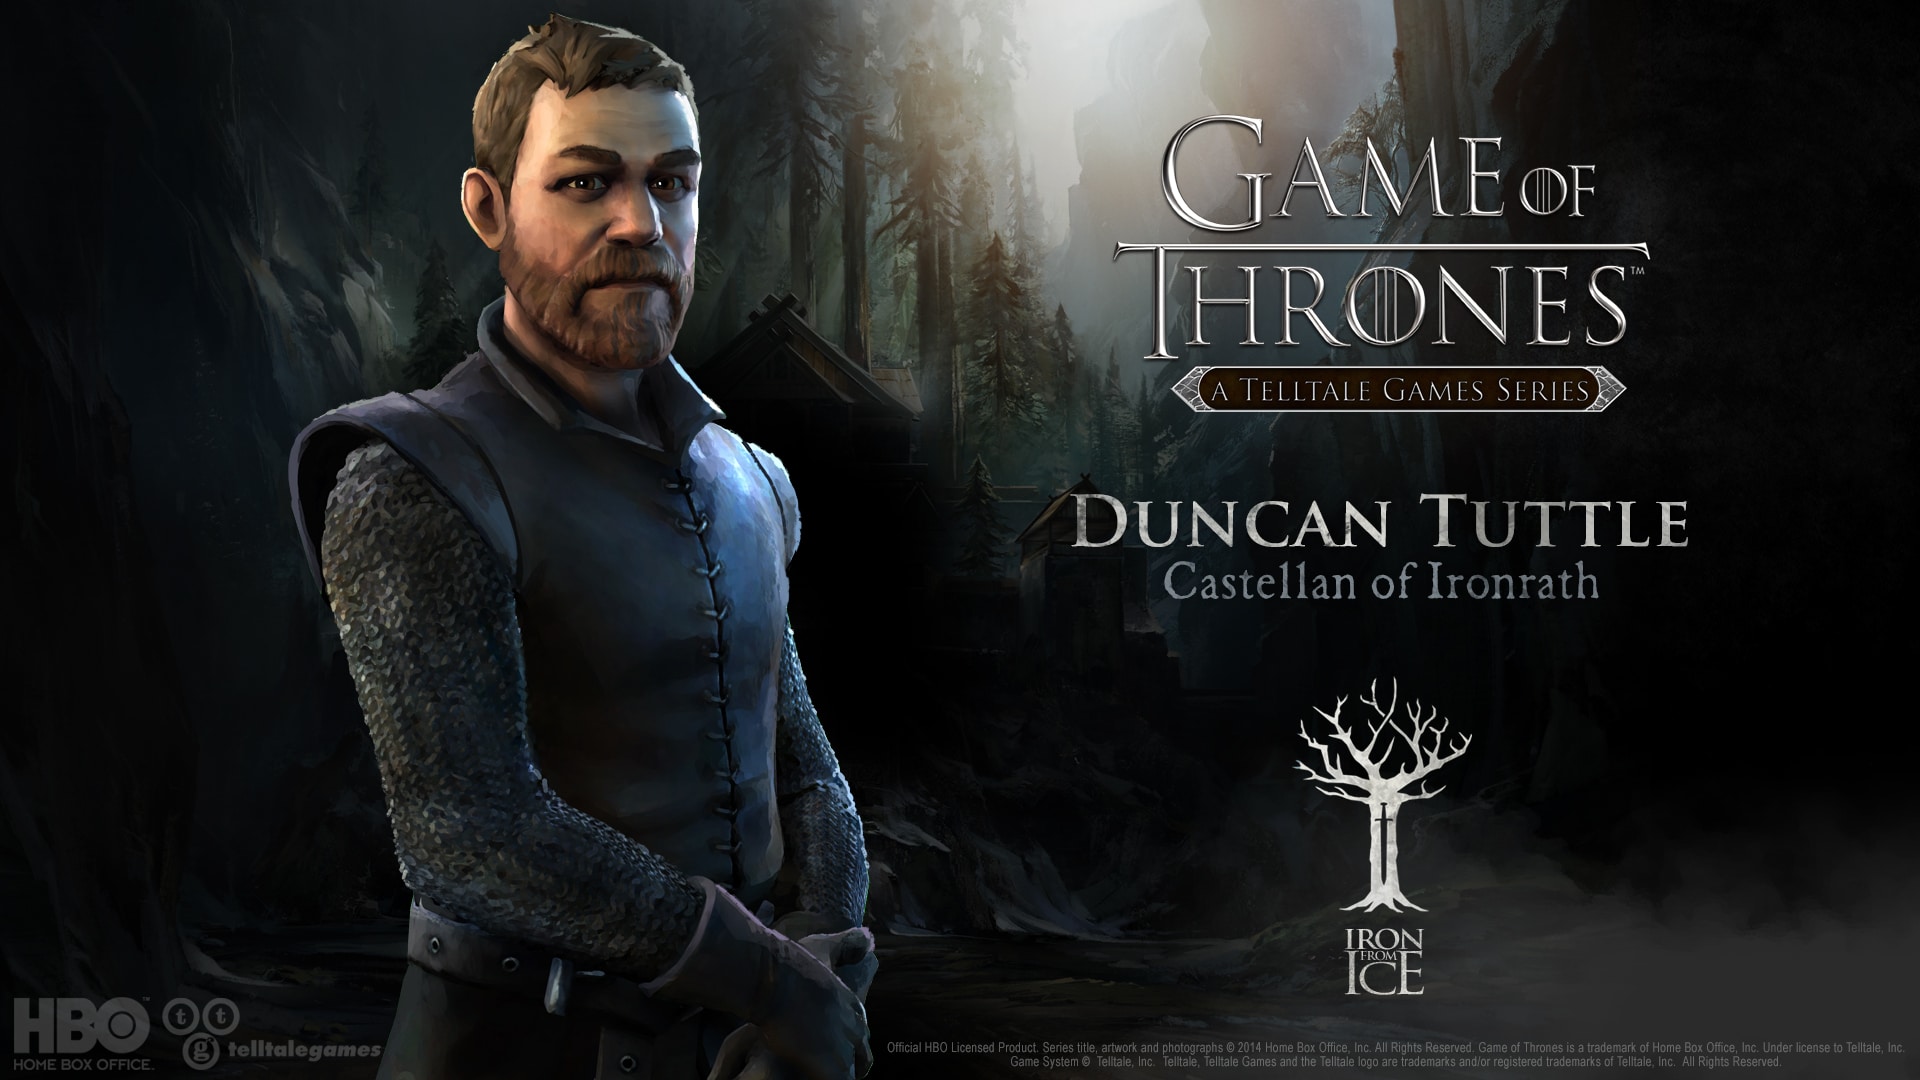 Telltale Game of Thrones Duncan Tuttle